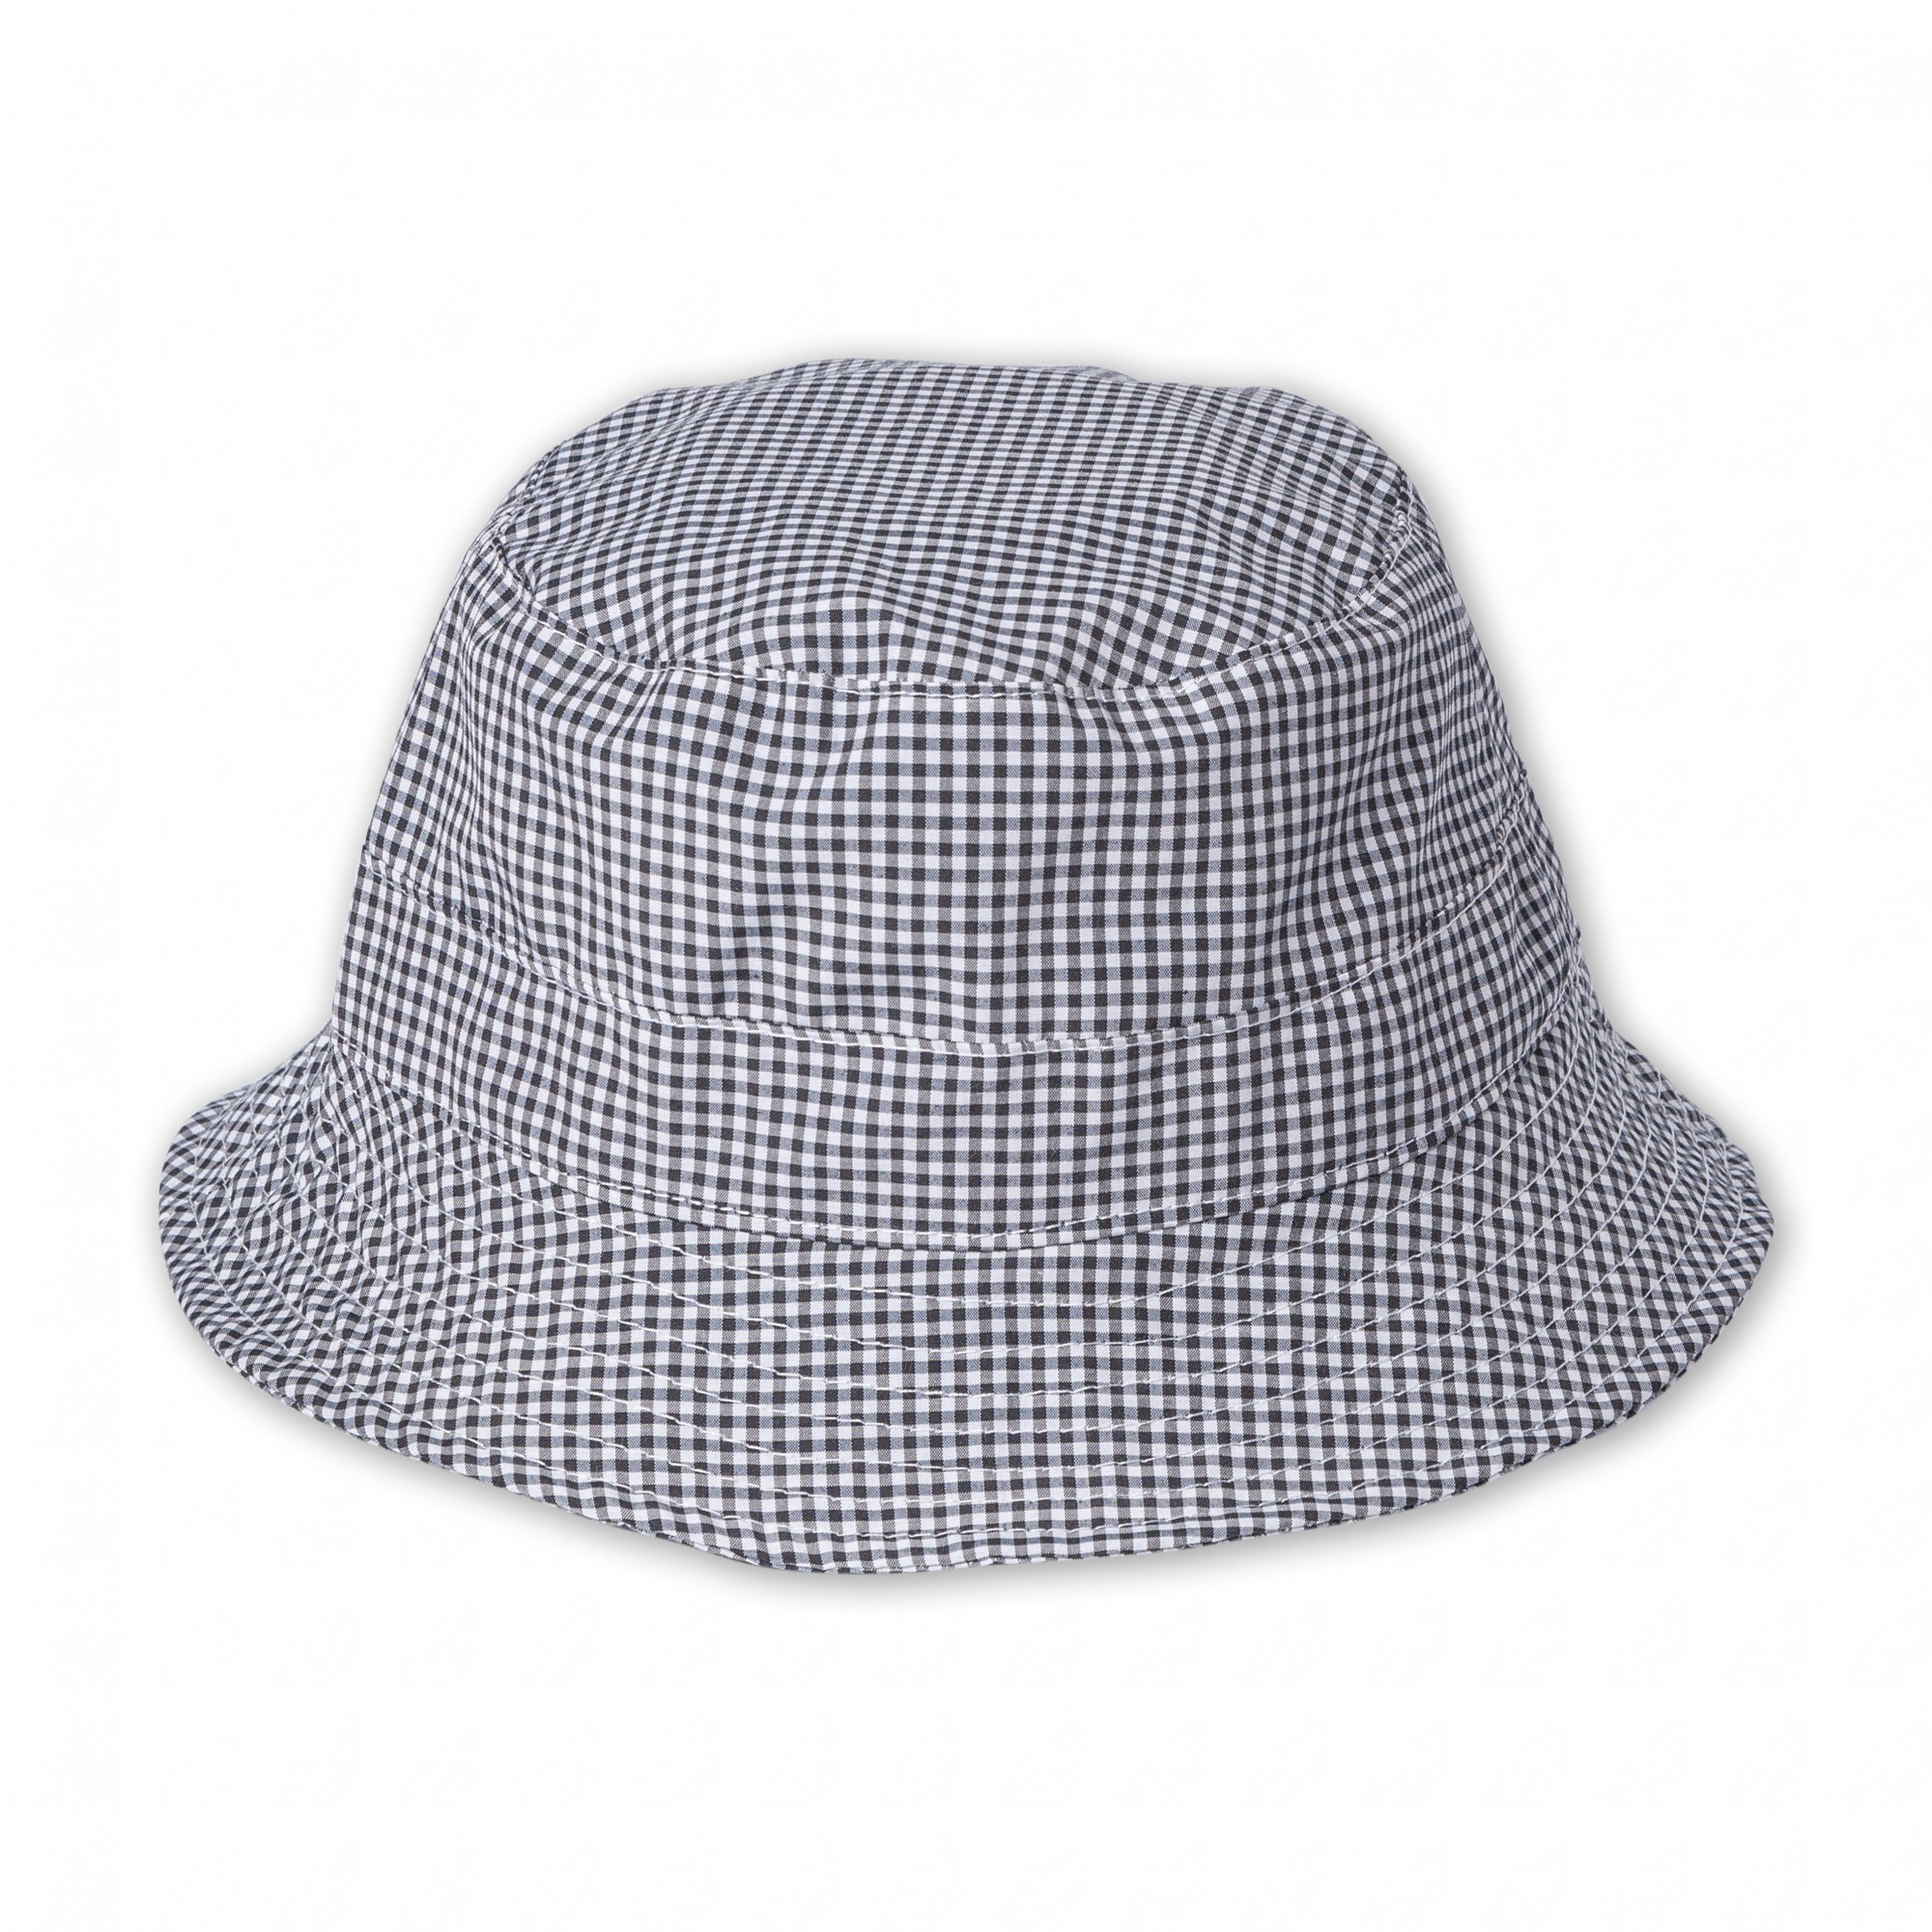 

Панама-шляпа Lider легкий хлопок Лето 56-58 см Клетка Черно-белая